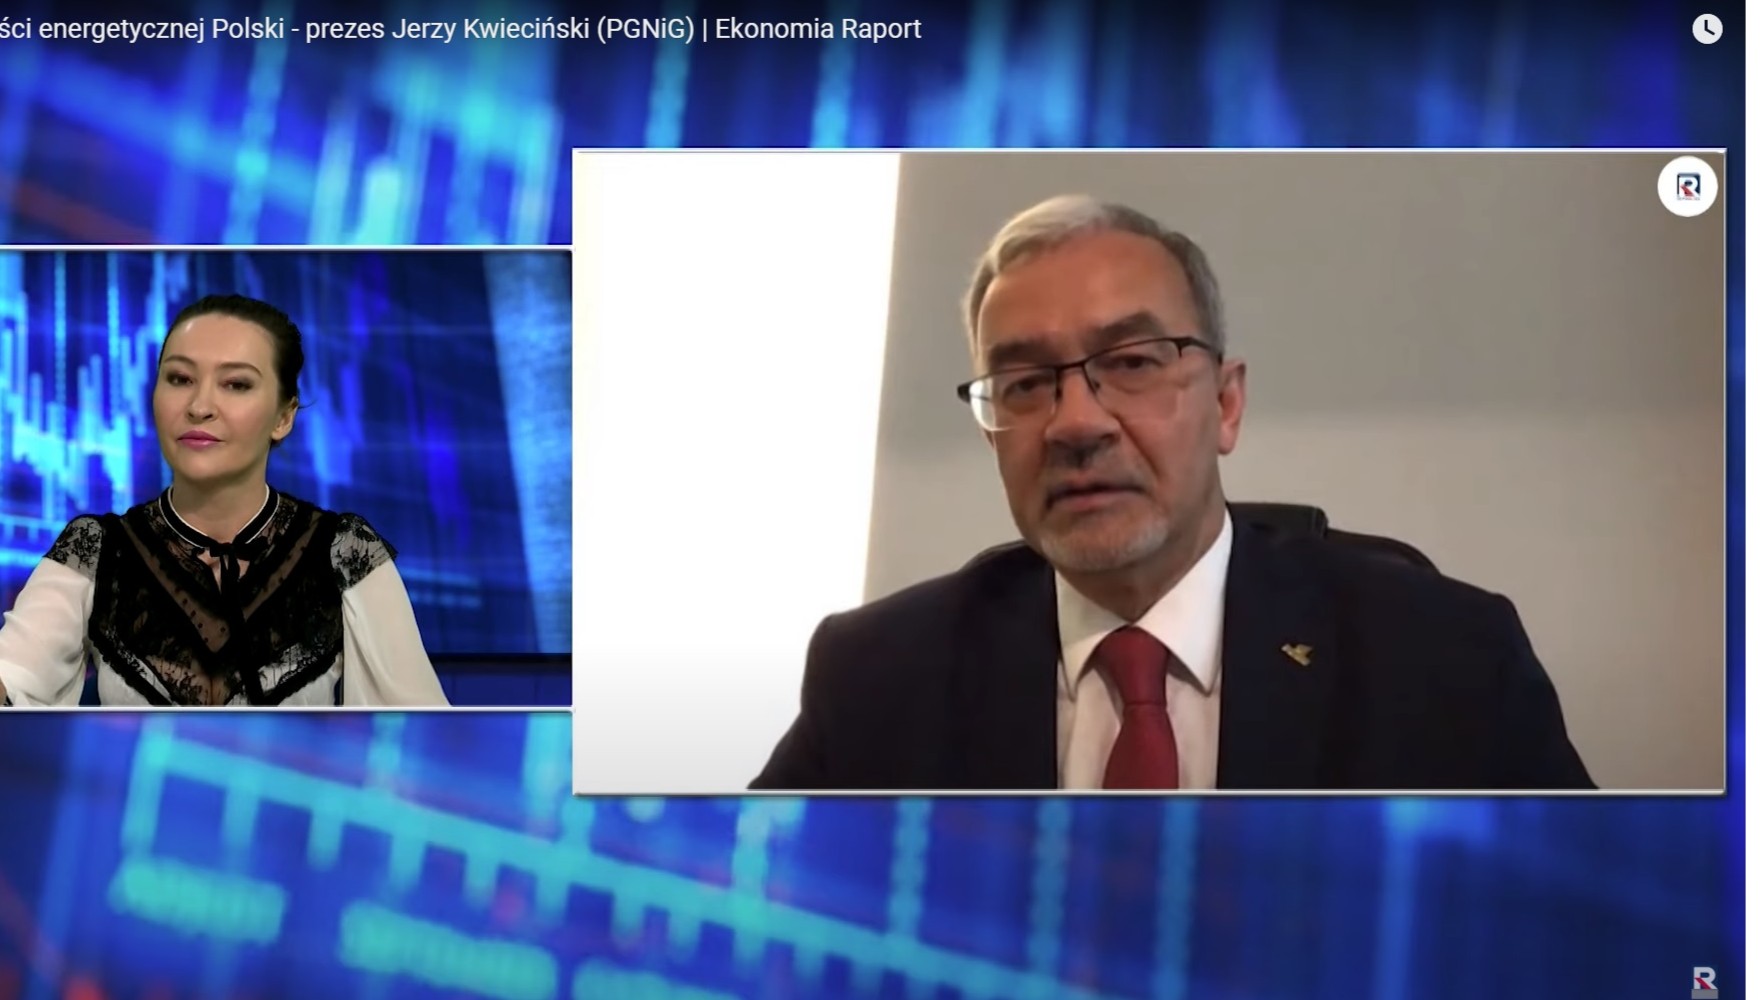 Poland's Natural Gas strategy. Jolanta Pawlak talks to Jerzy Kwieciński